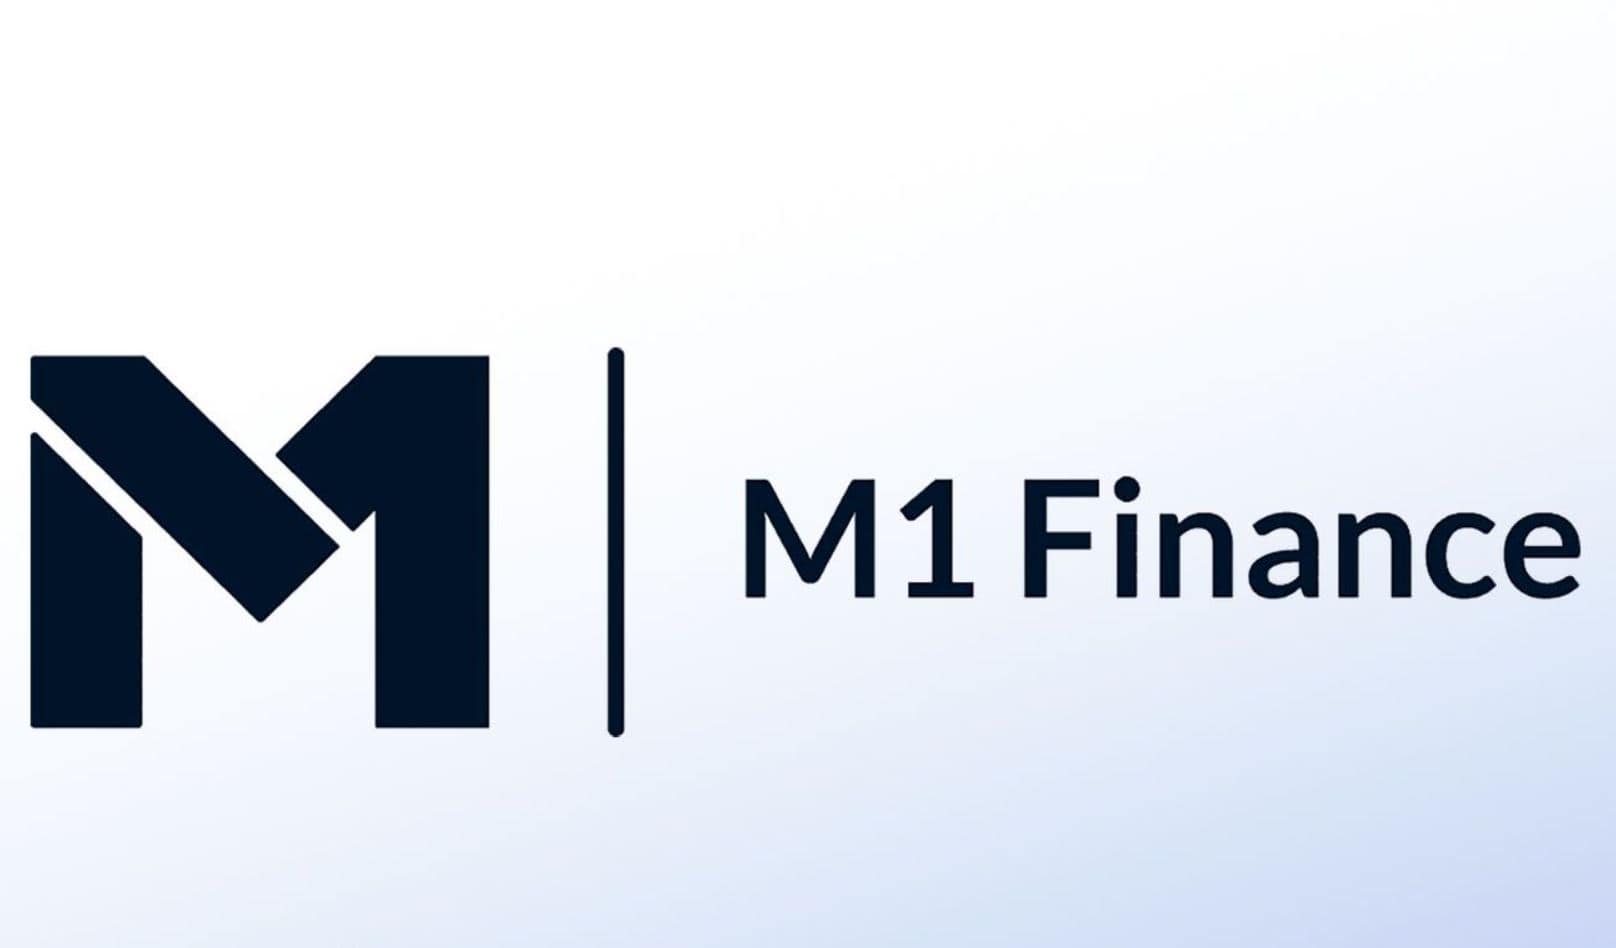 m1 finance